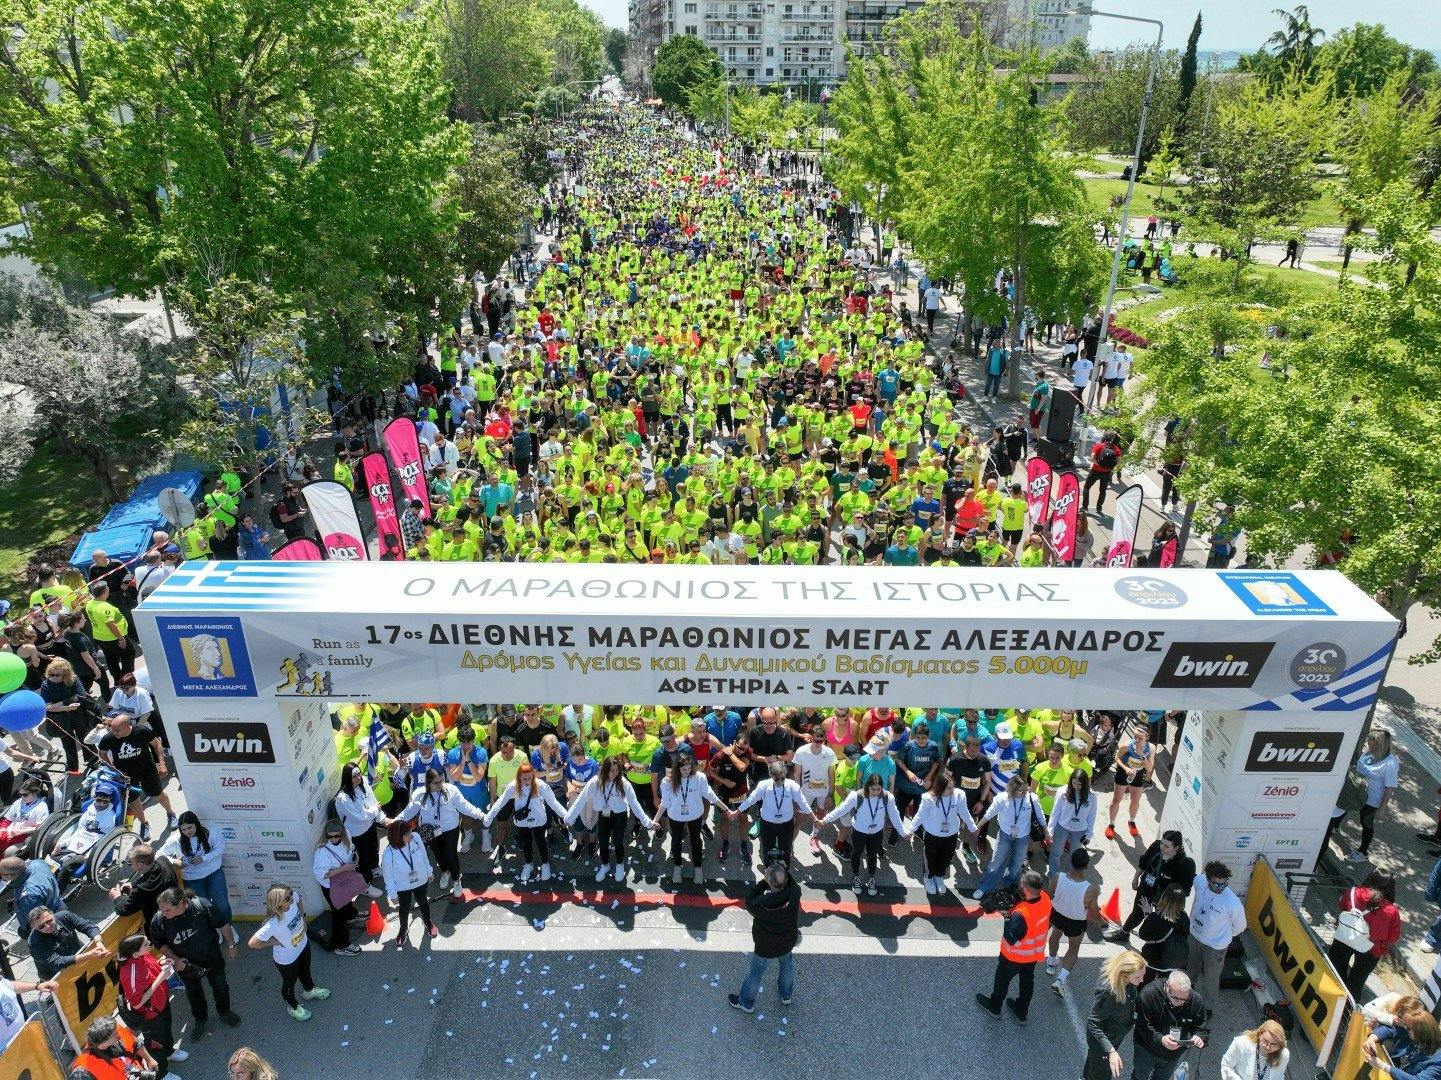 Με νέους όρους θα διεξαχθεί ο Διεθνής Μαραθώνιος Θεσσαλονίκης - Στον δήμο το 20% των εσόδων της διοργάνωσης